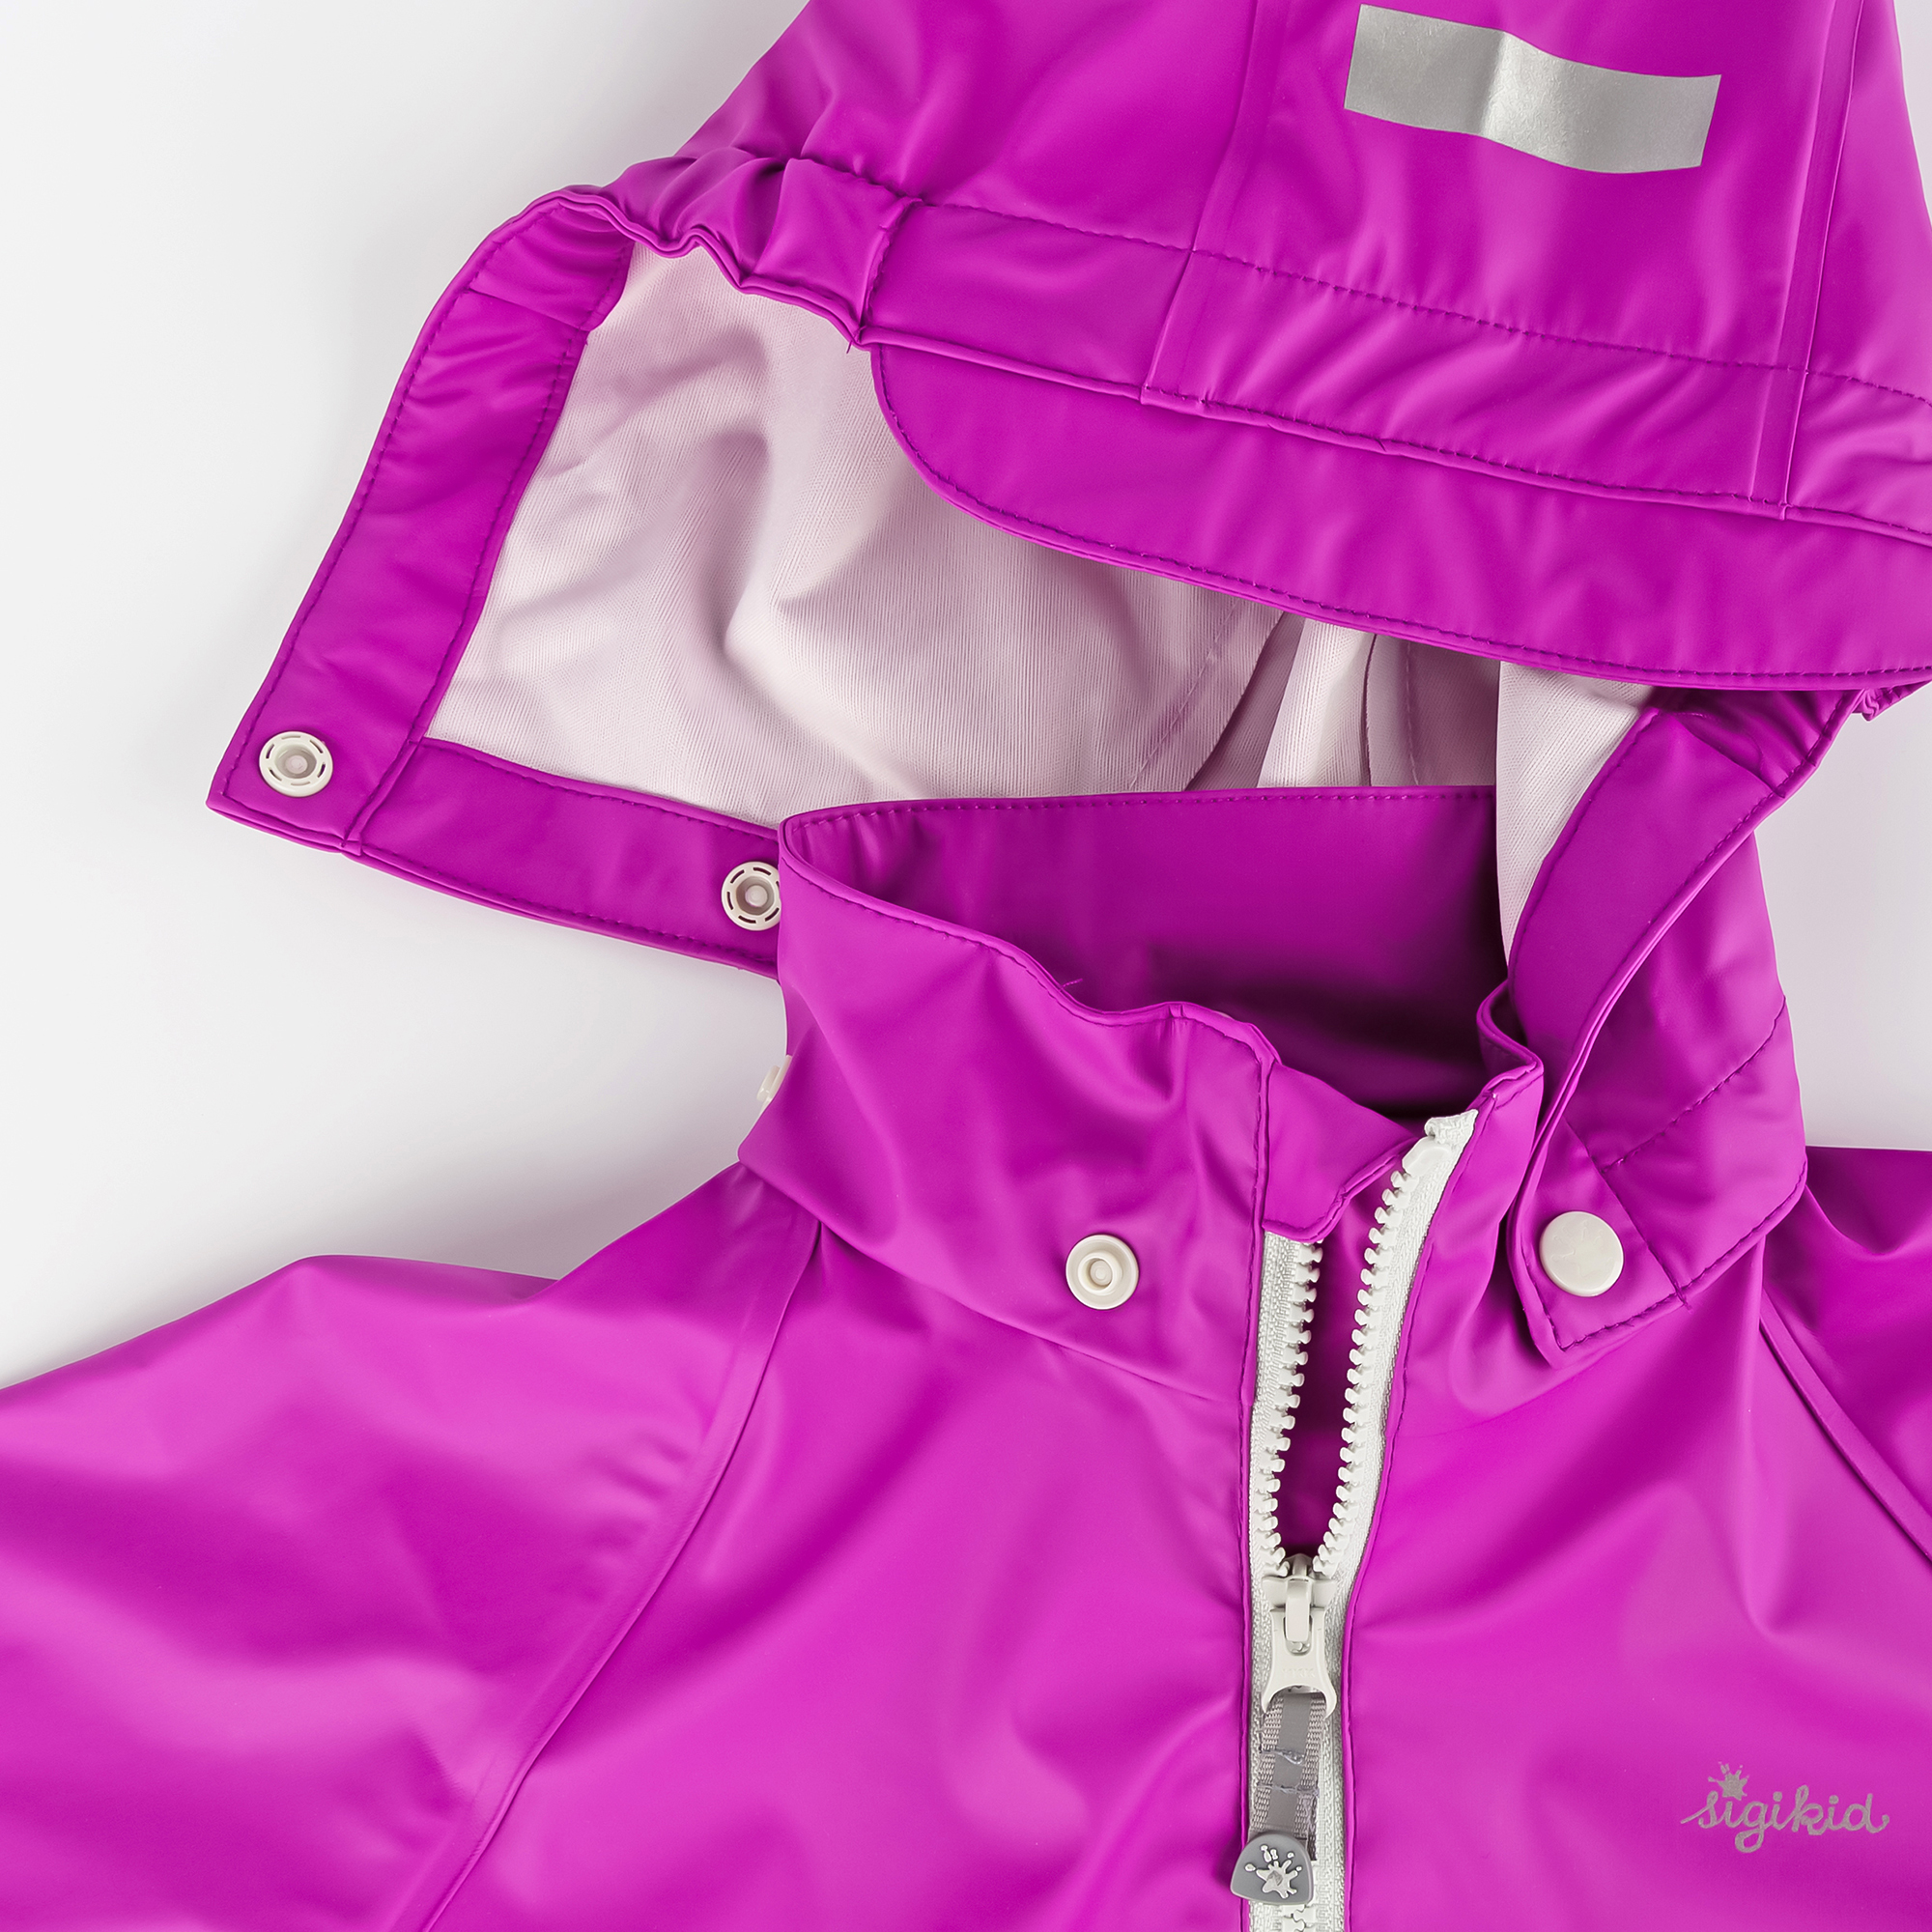 Kids' rain jacket, purple